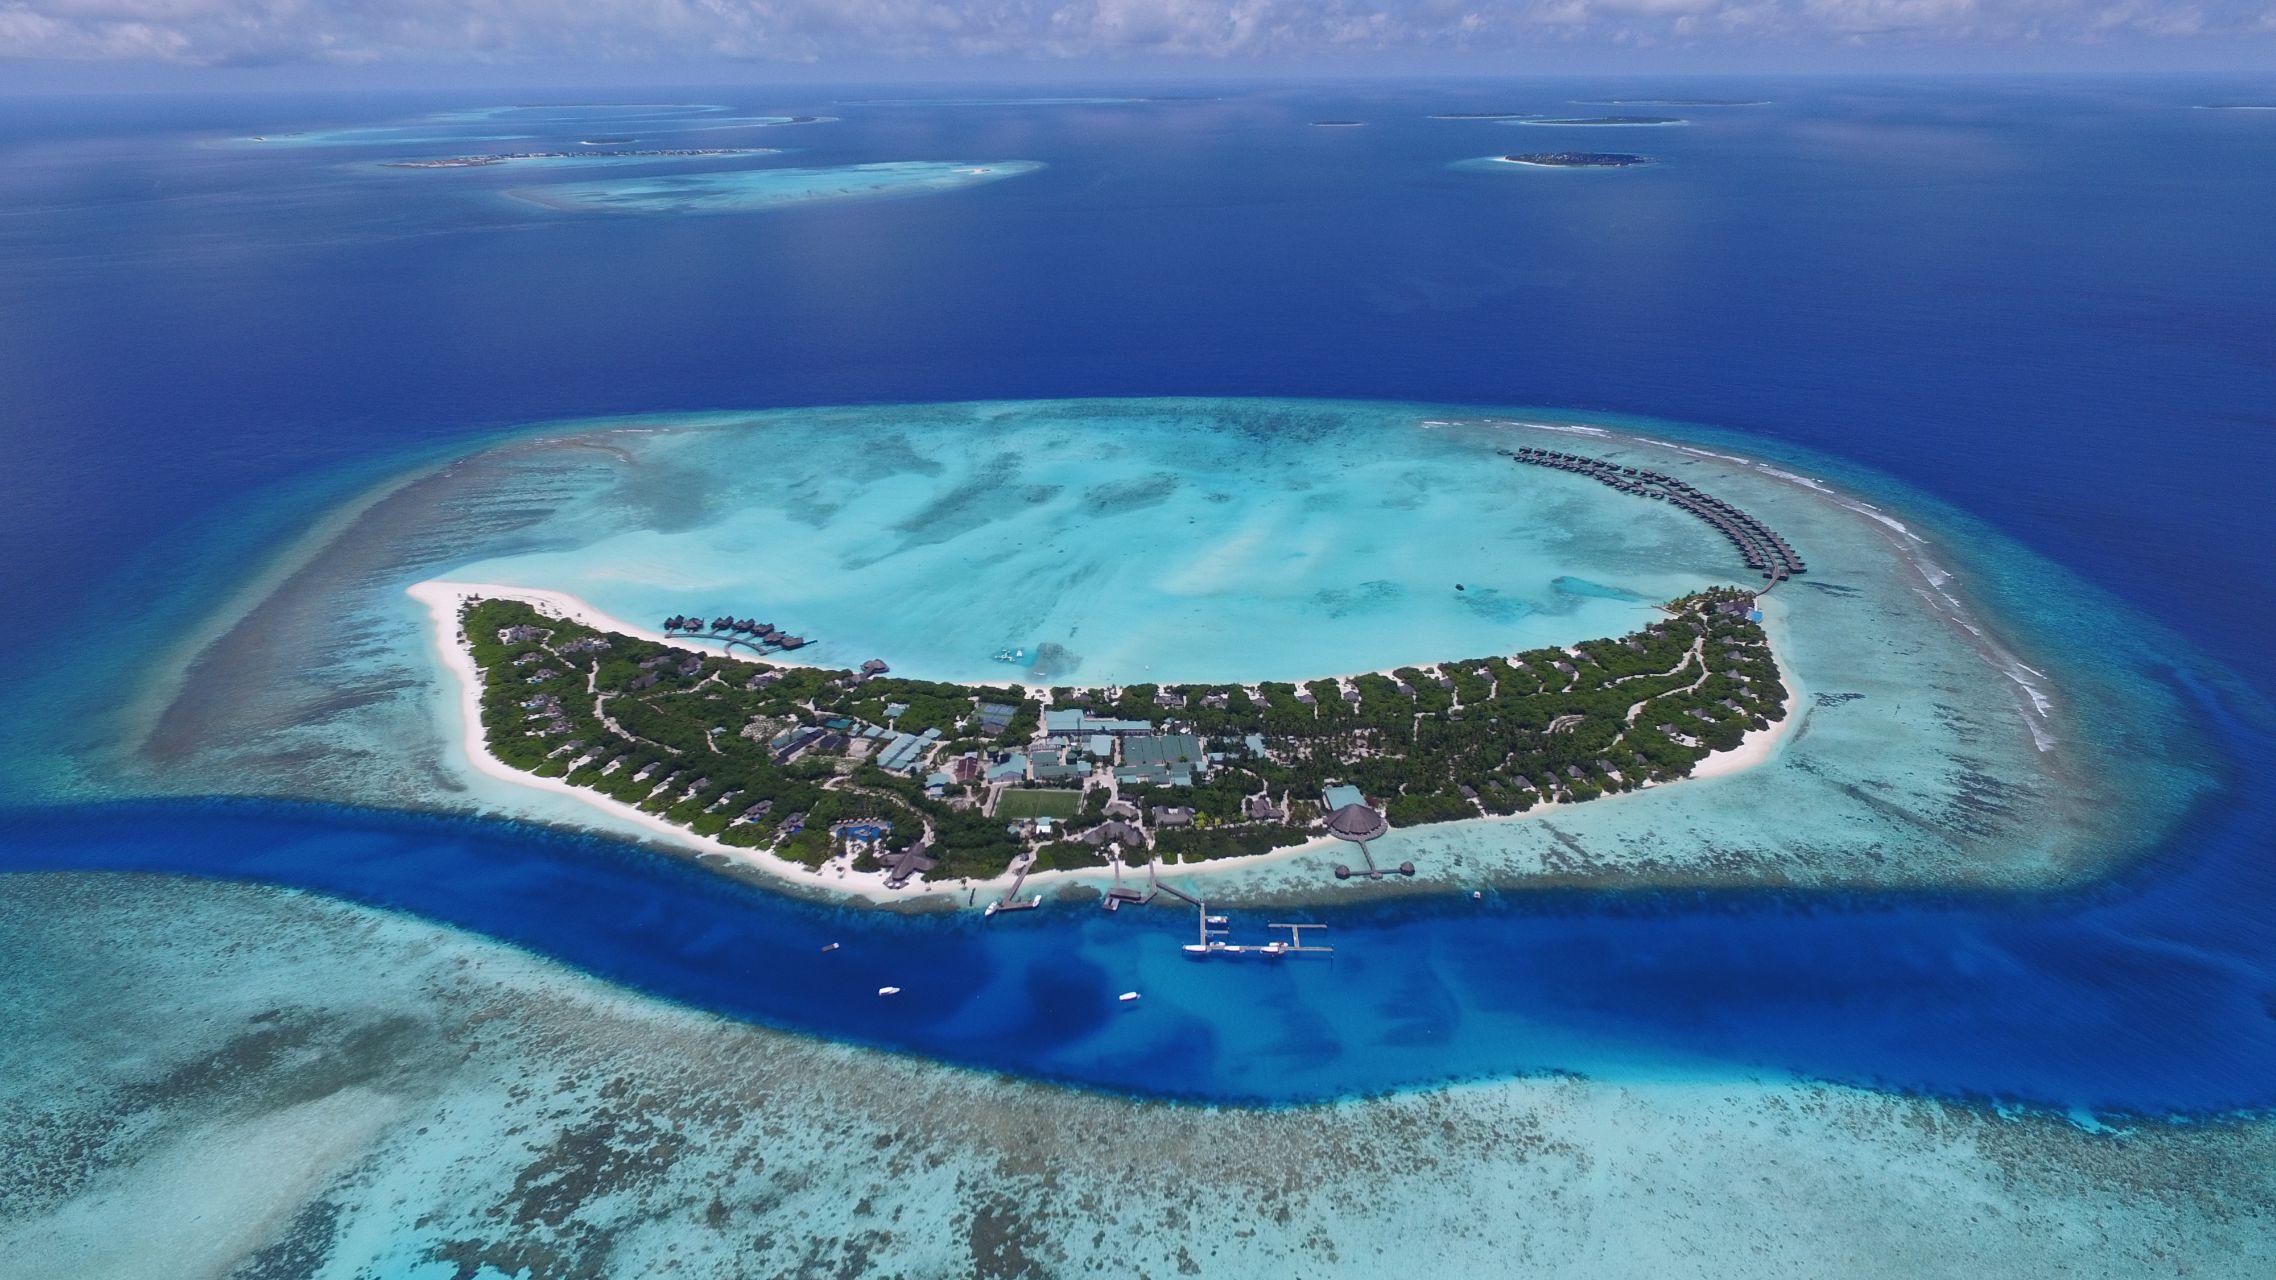 卓美亚岛(Jumeirah Maldives Ohahali Island)|马尔代夫,攻略(图片,天气,浮潜,沙滩),岛屿游记,代理价格-海岸线官网